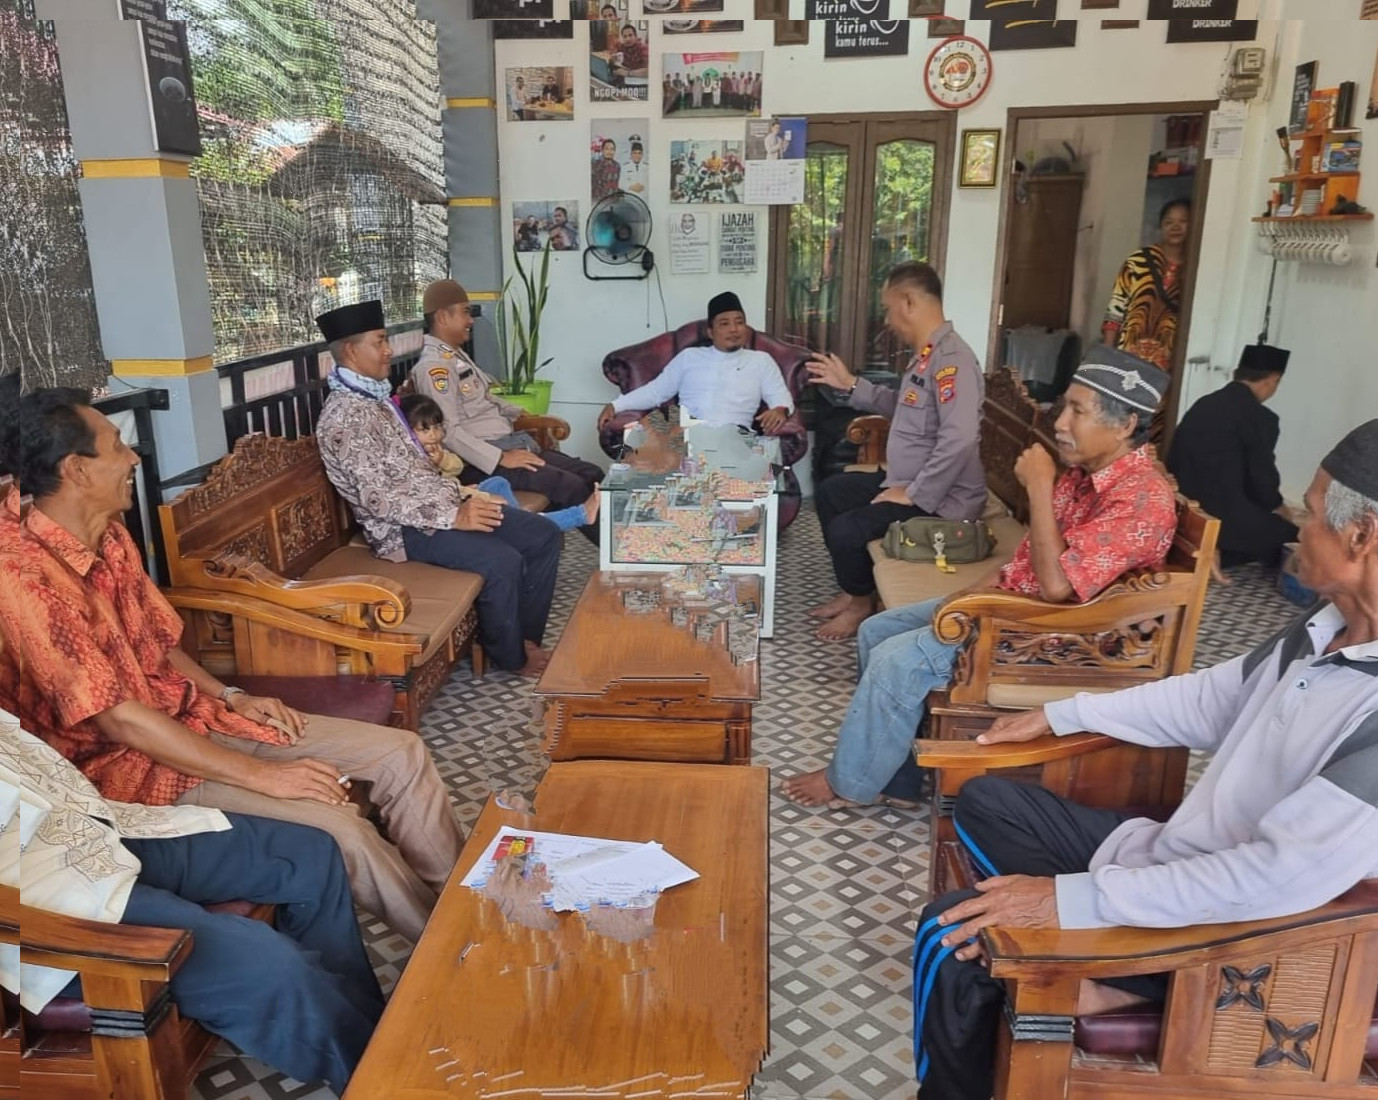 Polsubsektor Pelalawan Jajaran Polres Pelalawan Polda Riau, Menggelar Kegiatan Jumat Curhat Untuk Mendengar Langsung Curhat warga Mengenai Saran, Kritikan, masukan Serta Aduan Masyarakat Terkait Dengan Pelayanan Kepolisian